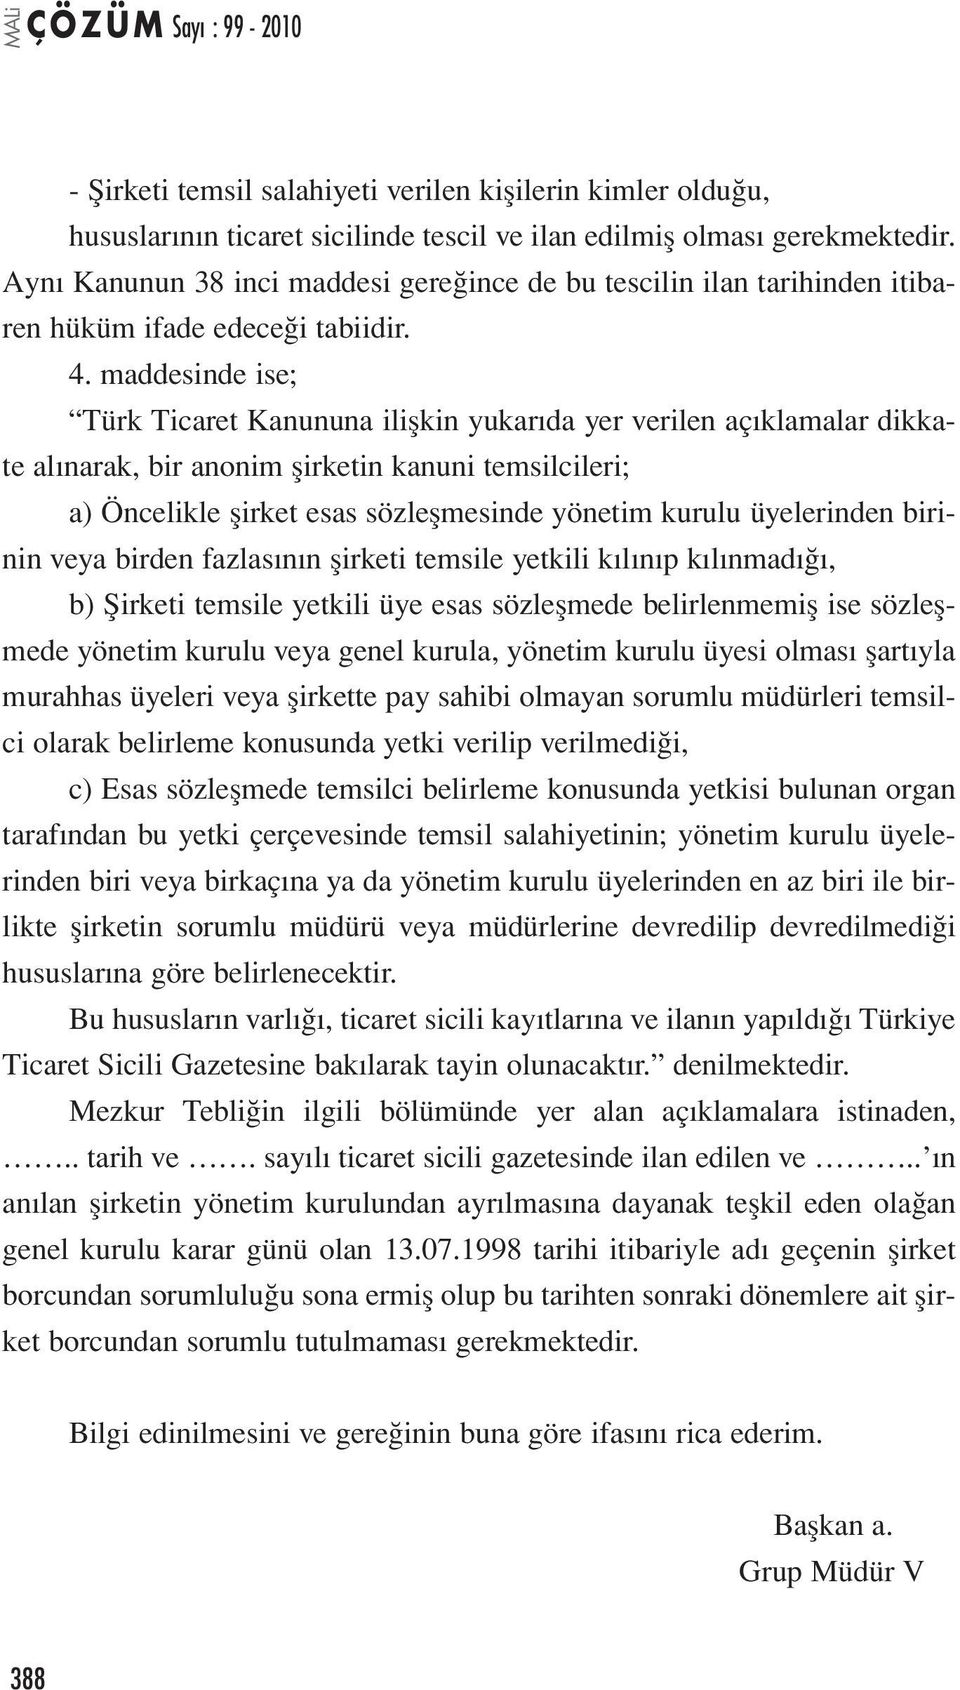 maddesinde ise; Türk Ticaret Kanununa ilişkin yukarıda yer verilen açıklamalar dikkate alınarak, bir anonim şirketin kanuni temsilcileri; a) Öncelikle şirket esas sözleşmesinde yönetim kurulu